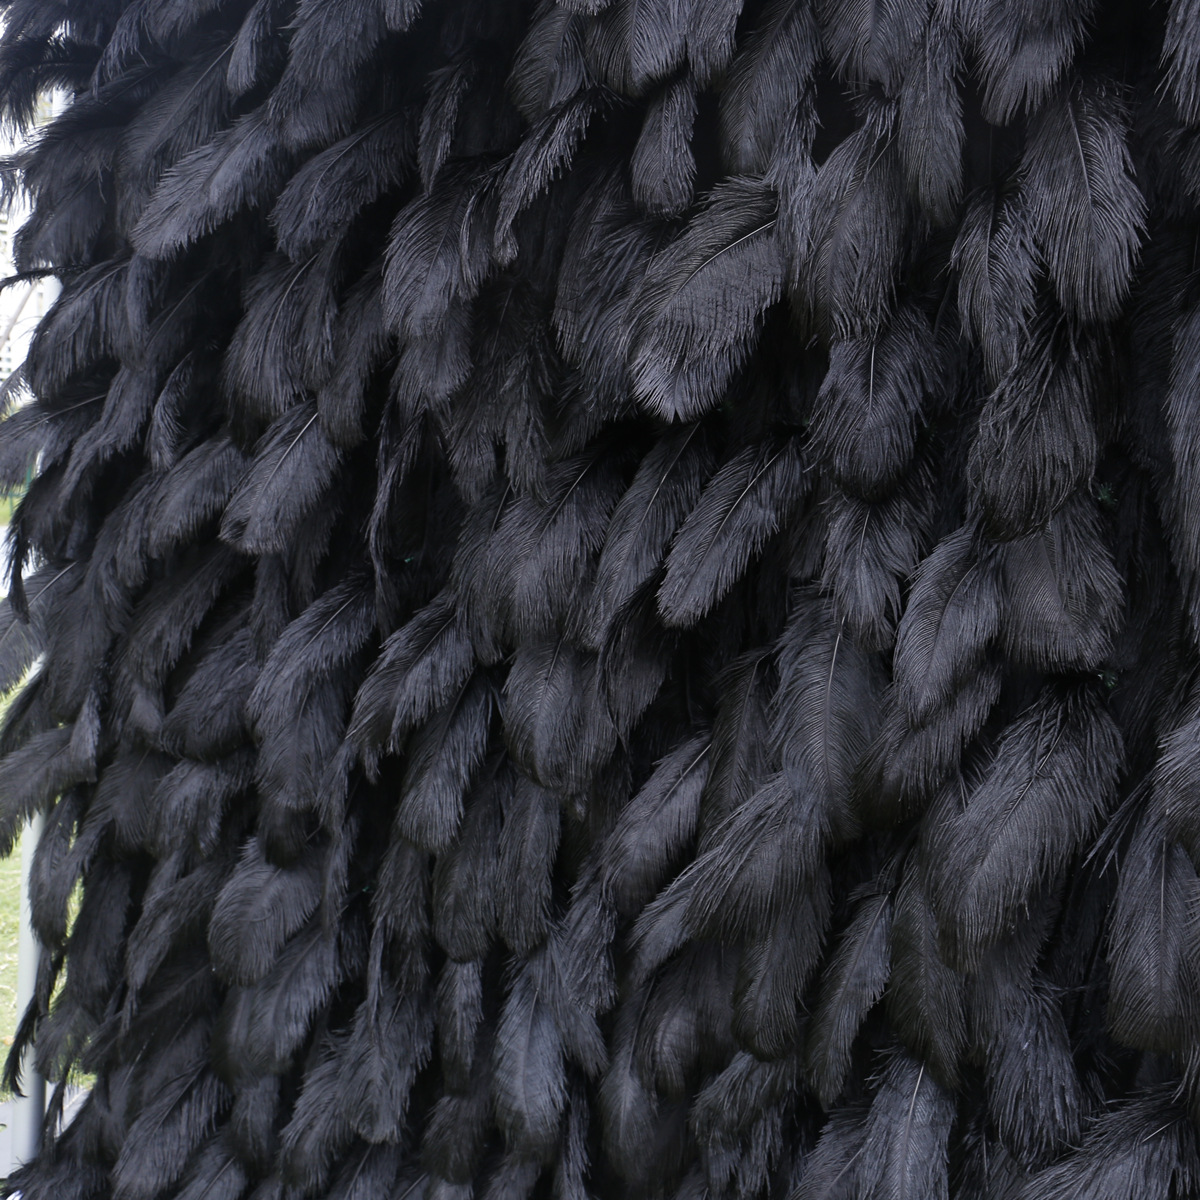 Қара мамық матаның астыңғы жағындағы гүл қабырғасының фотосуреті гүл қабырғасының фондық суреті